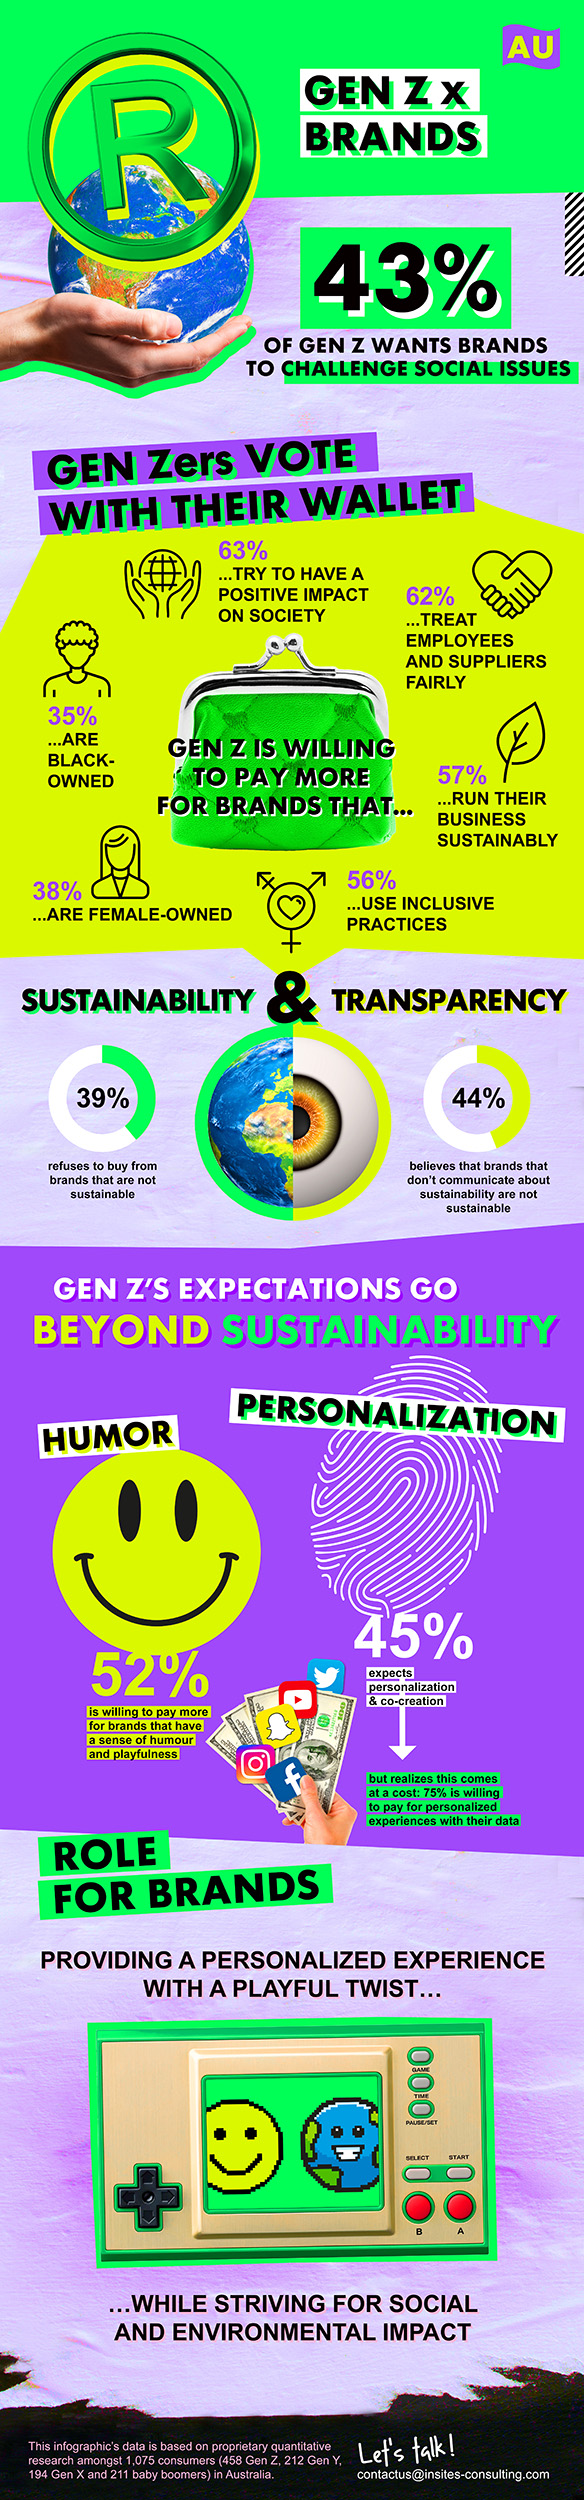 Gen Z x Brands AU Infographic